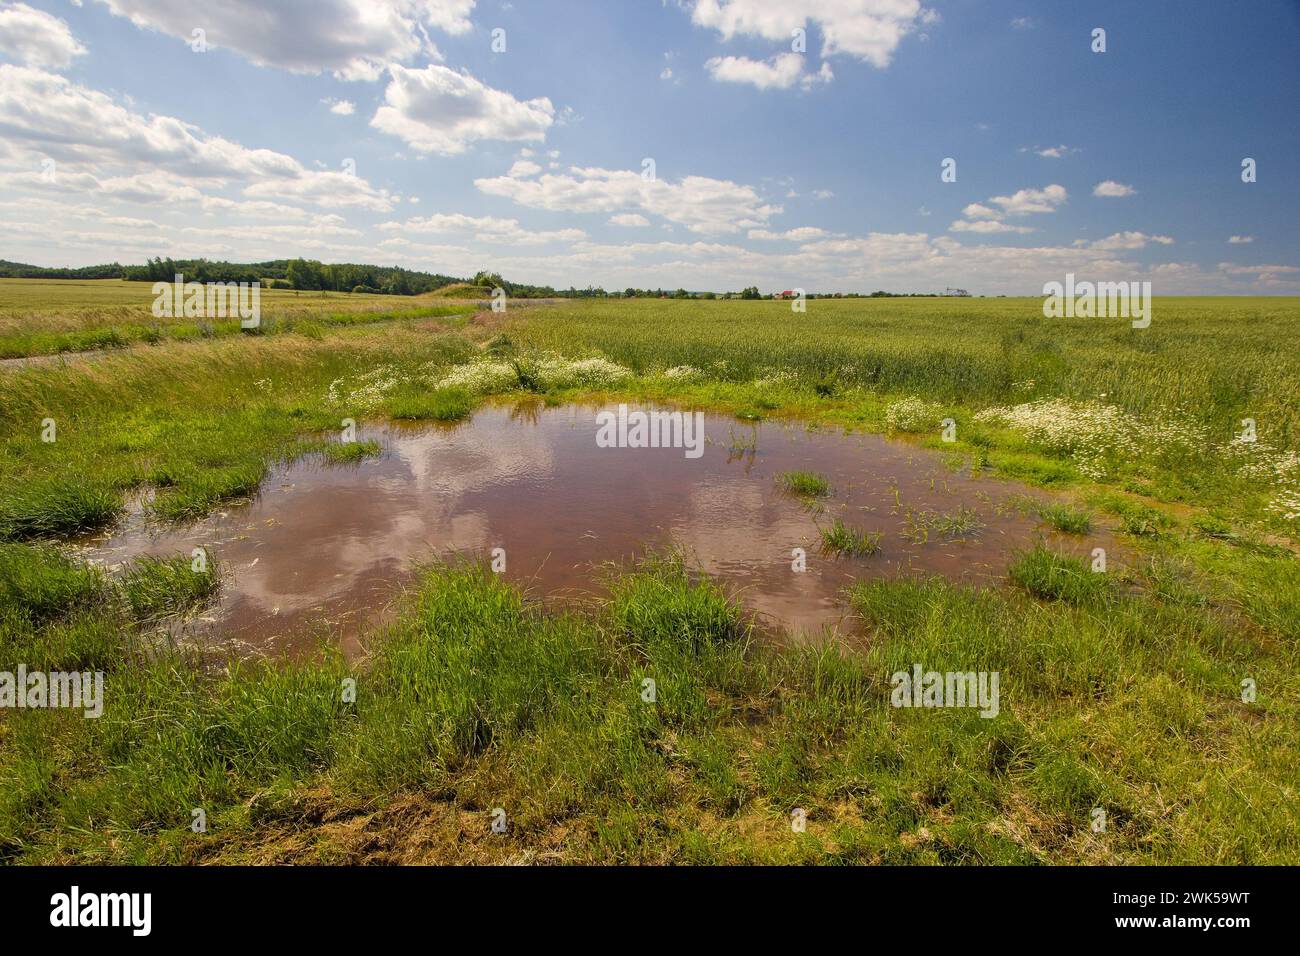 La palude effimera sul campo. Piccolo stagno temporaneo nel paesaggio agricolo. Foto Stock